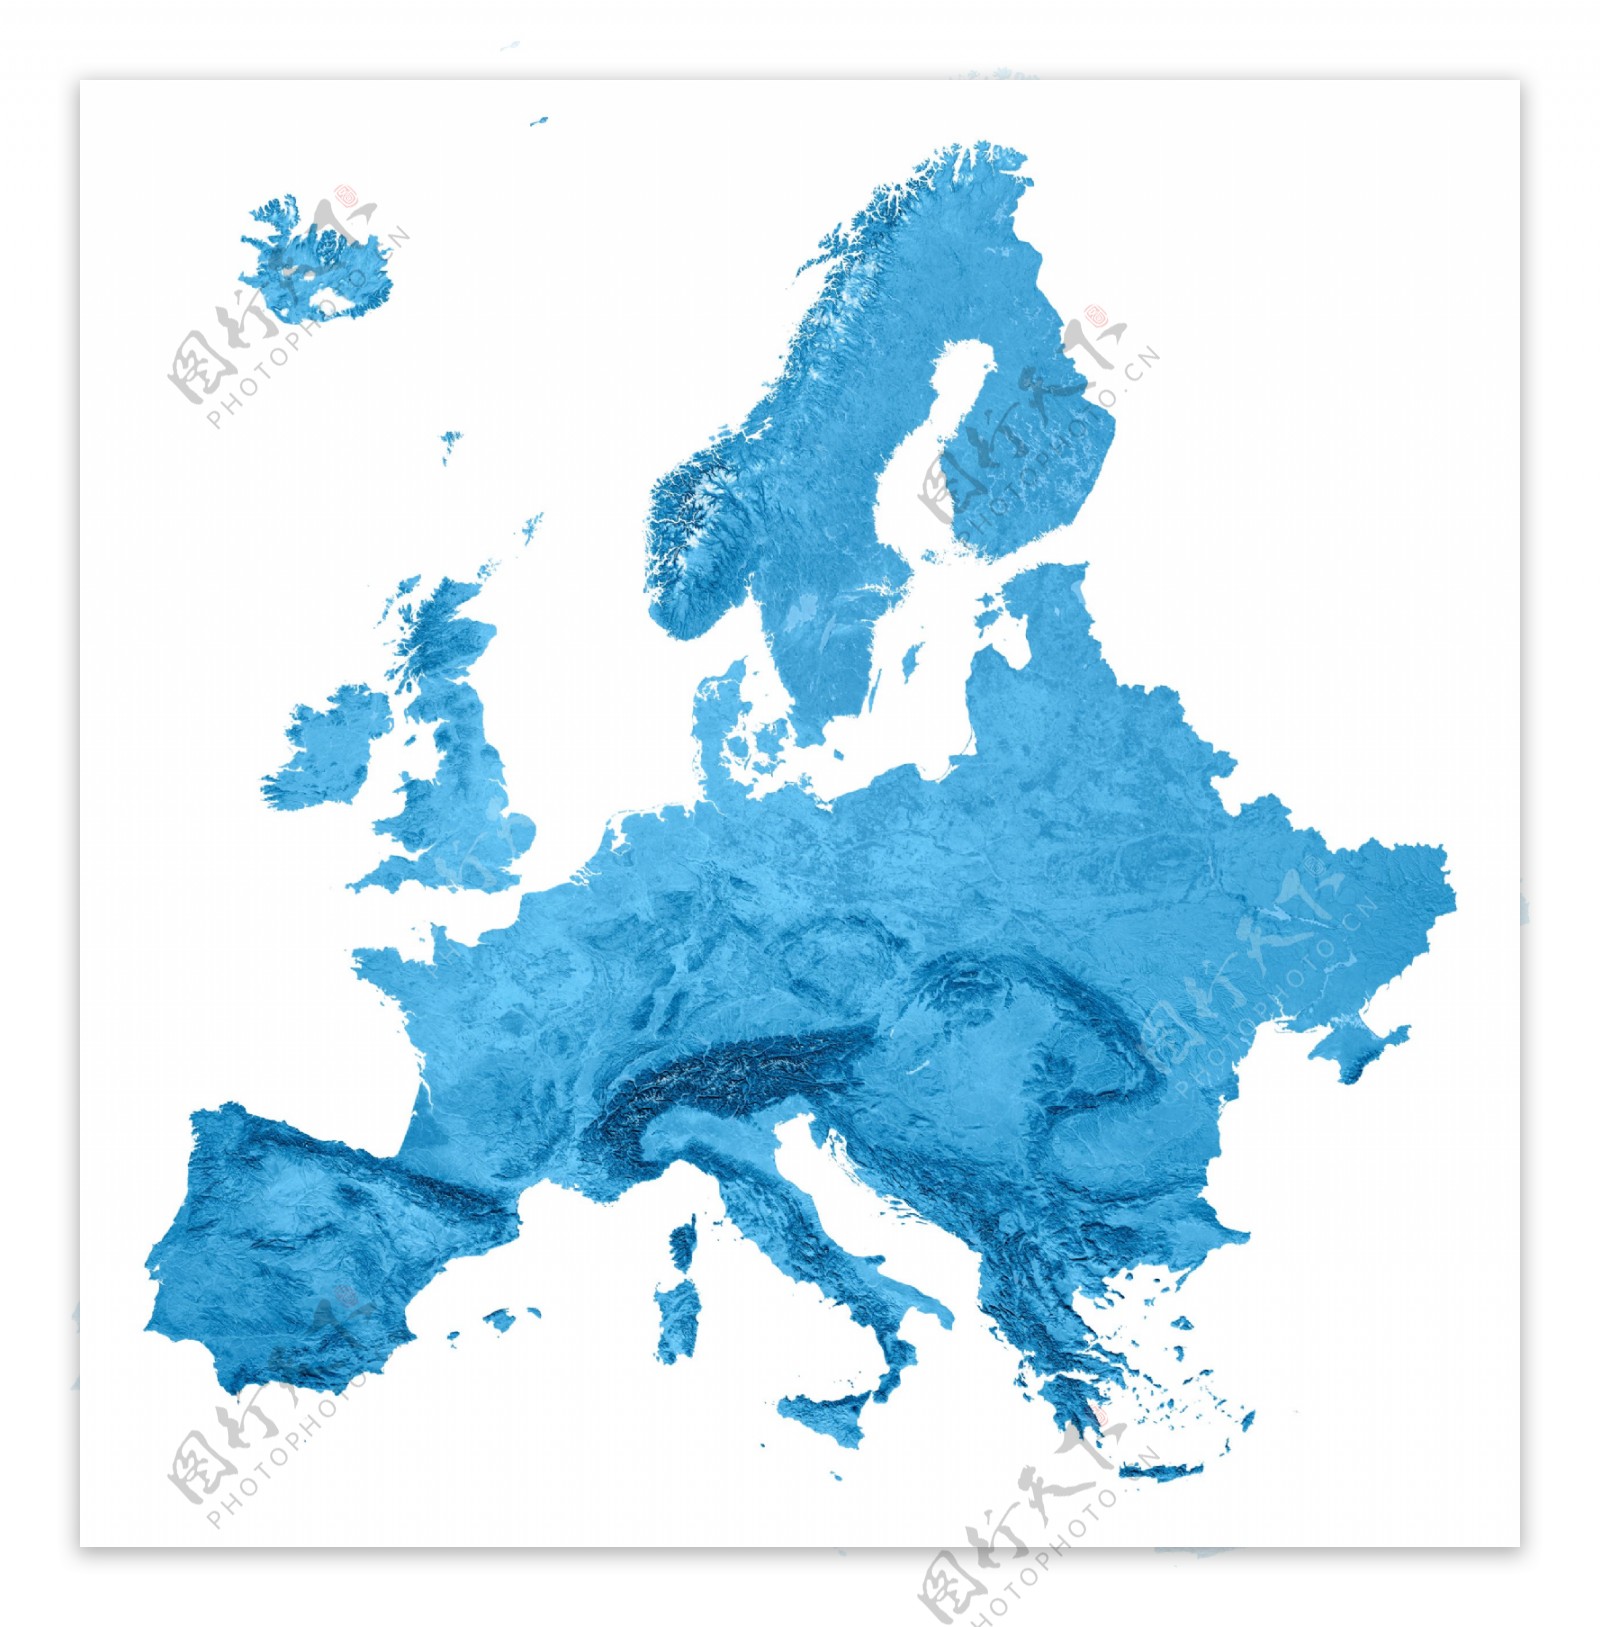 西欧地图图片